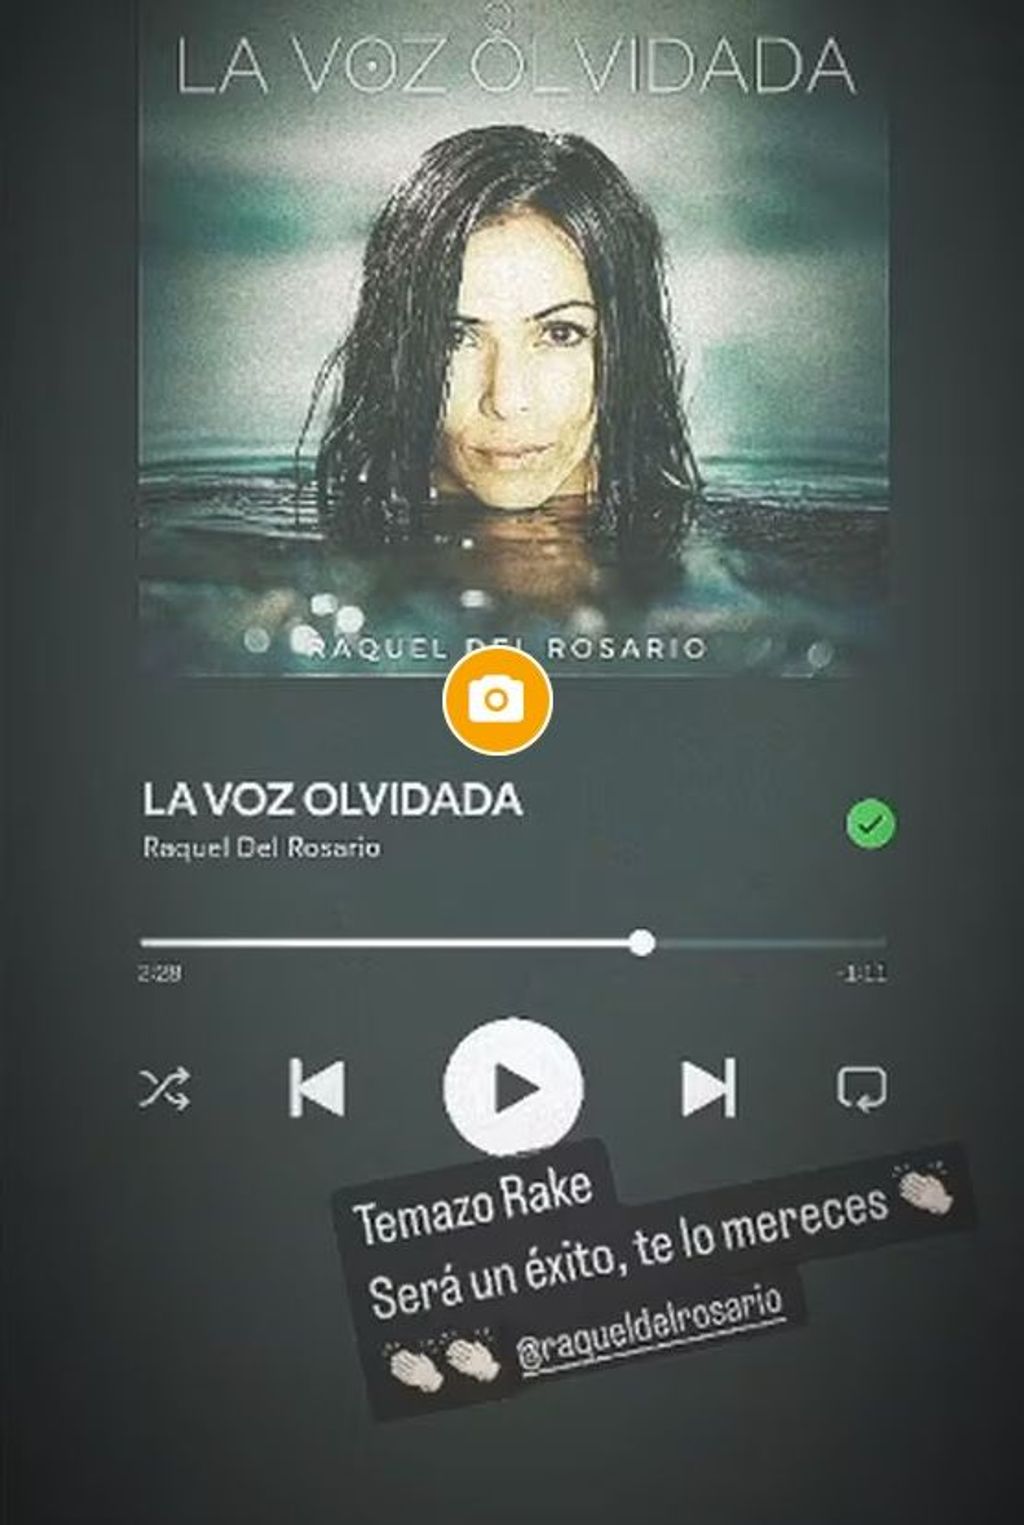 El mensaje de Fernando Alonso a Raquel del Rosario